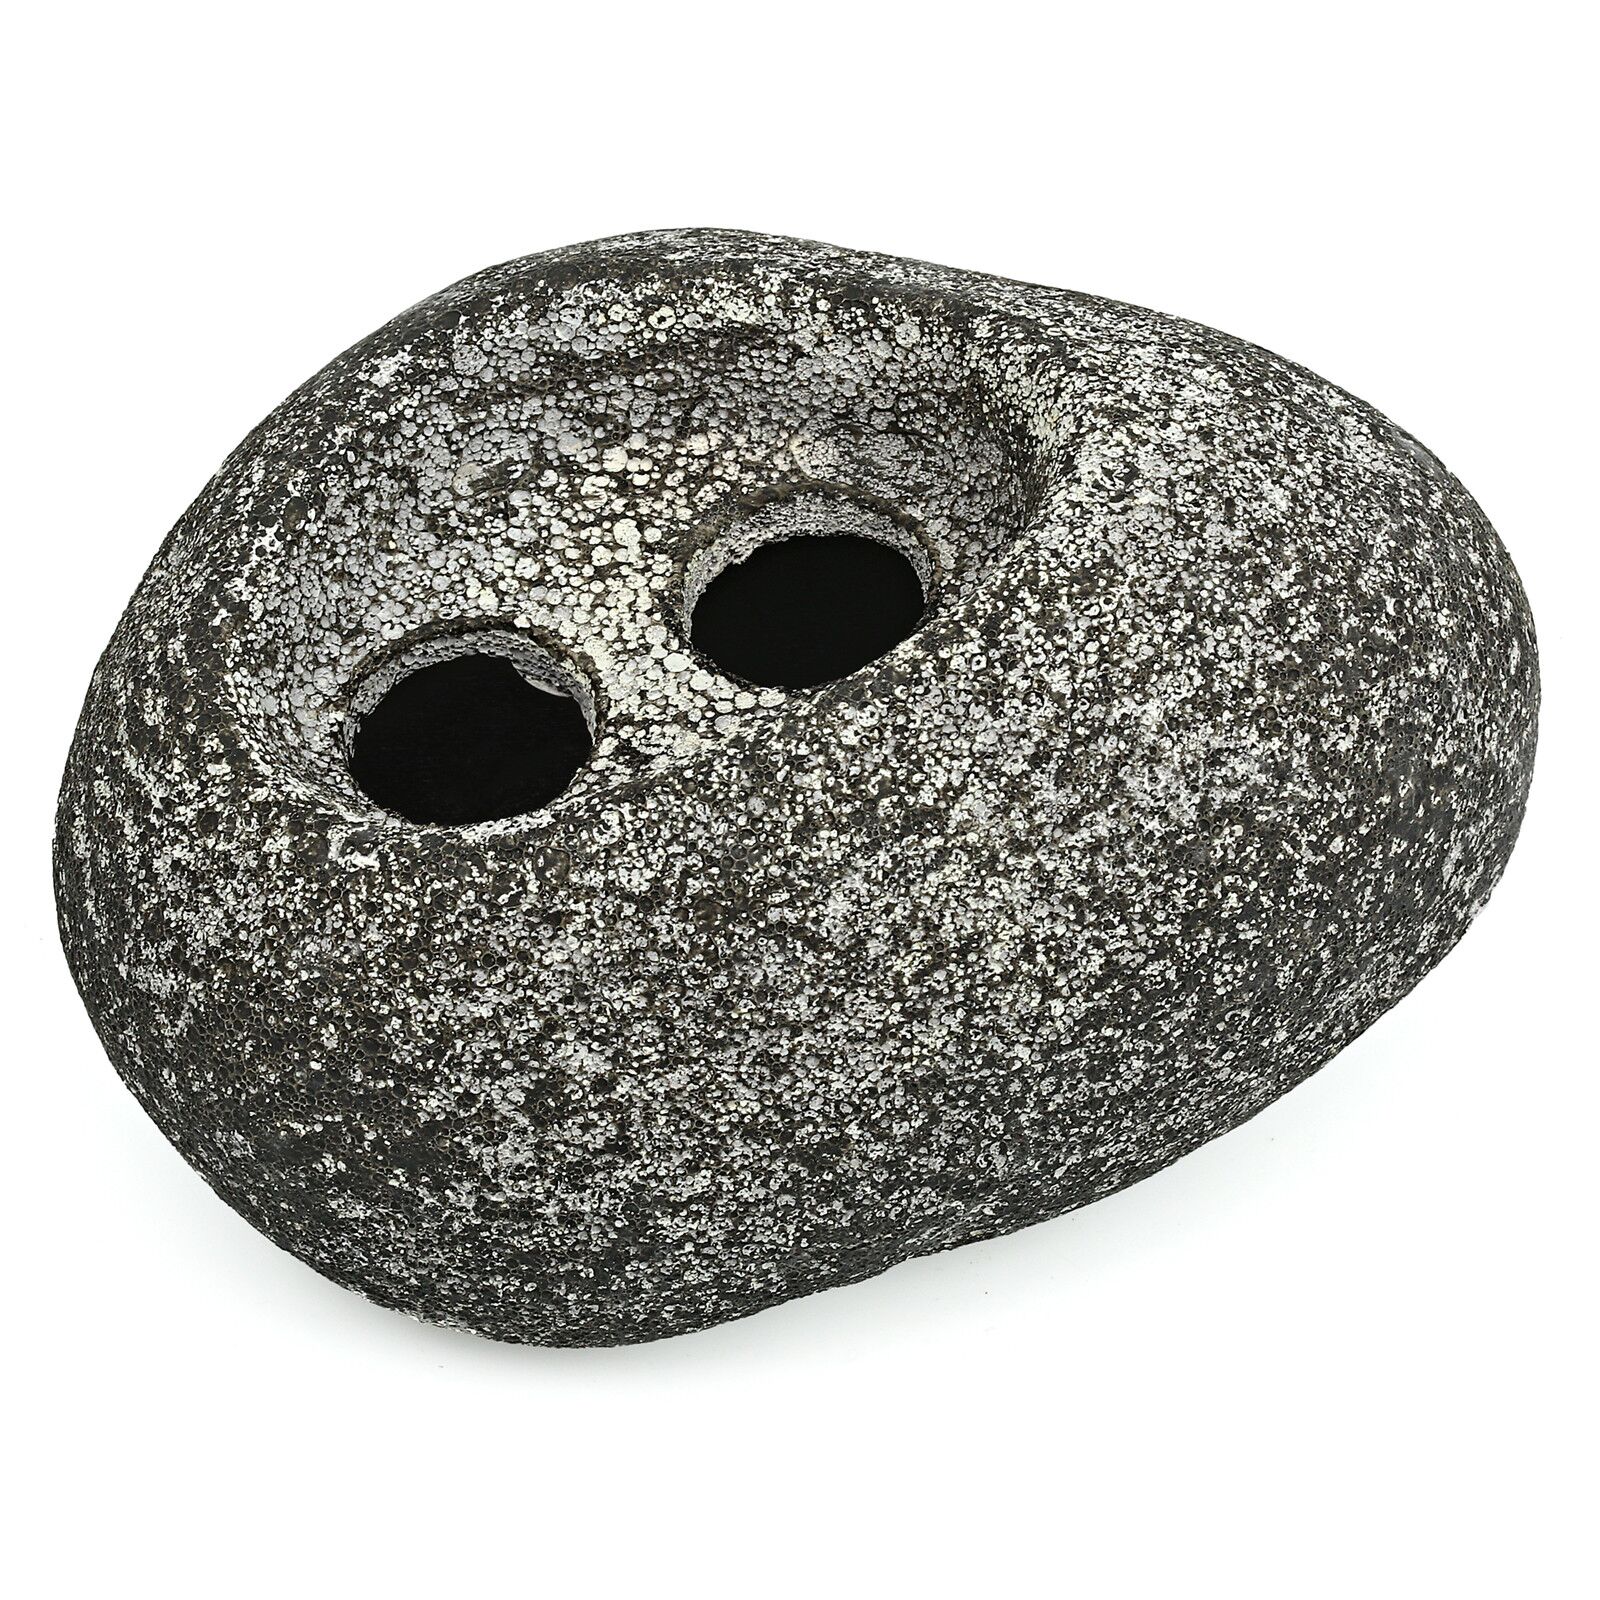 ISTA - Water Plant Rock - Ceramic